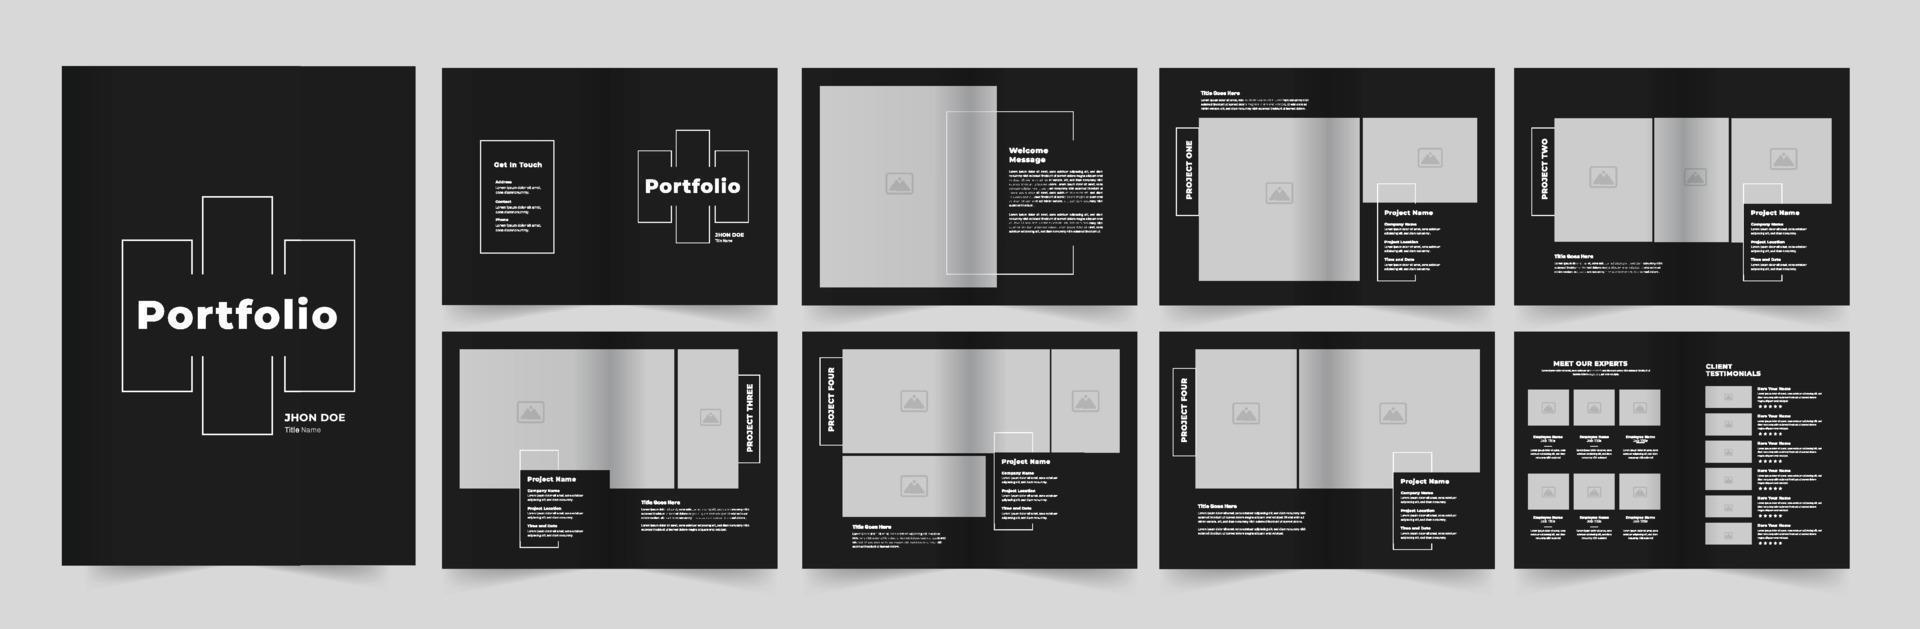 Portfolio Design Architecture Portfolio Interior Portfolio Design vector